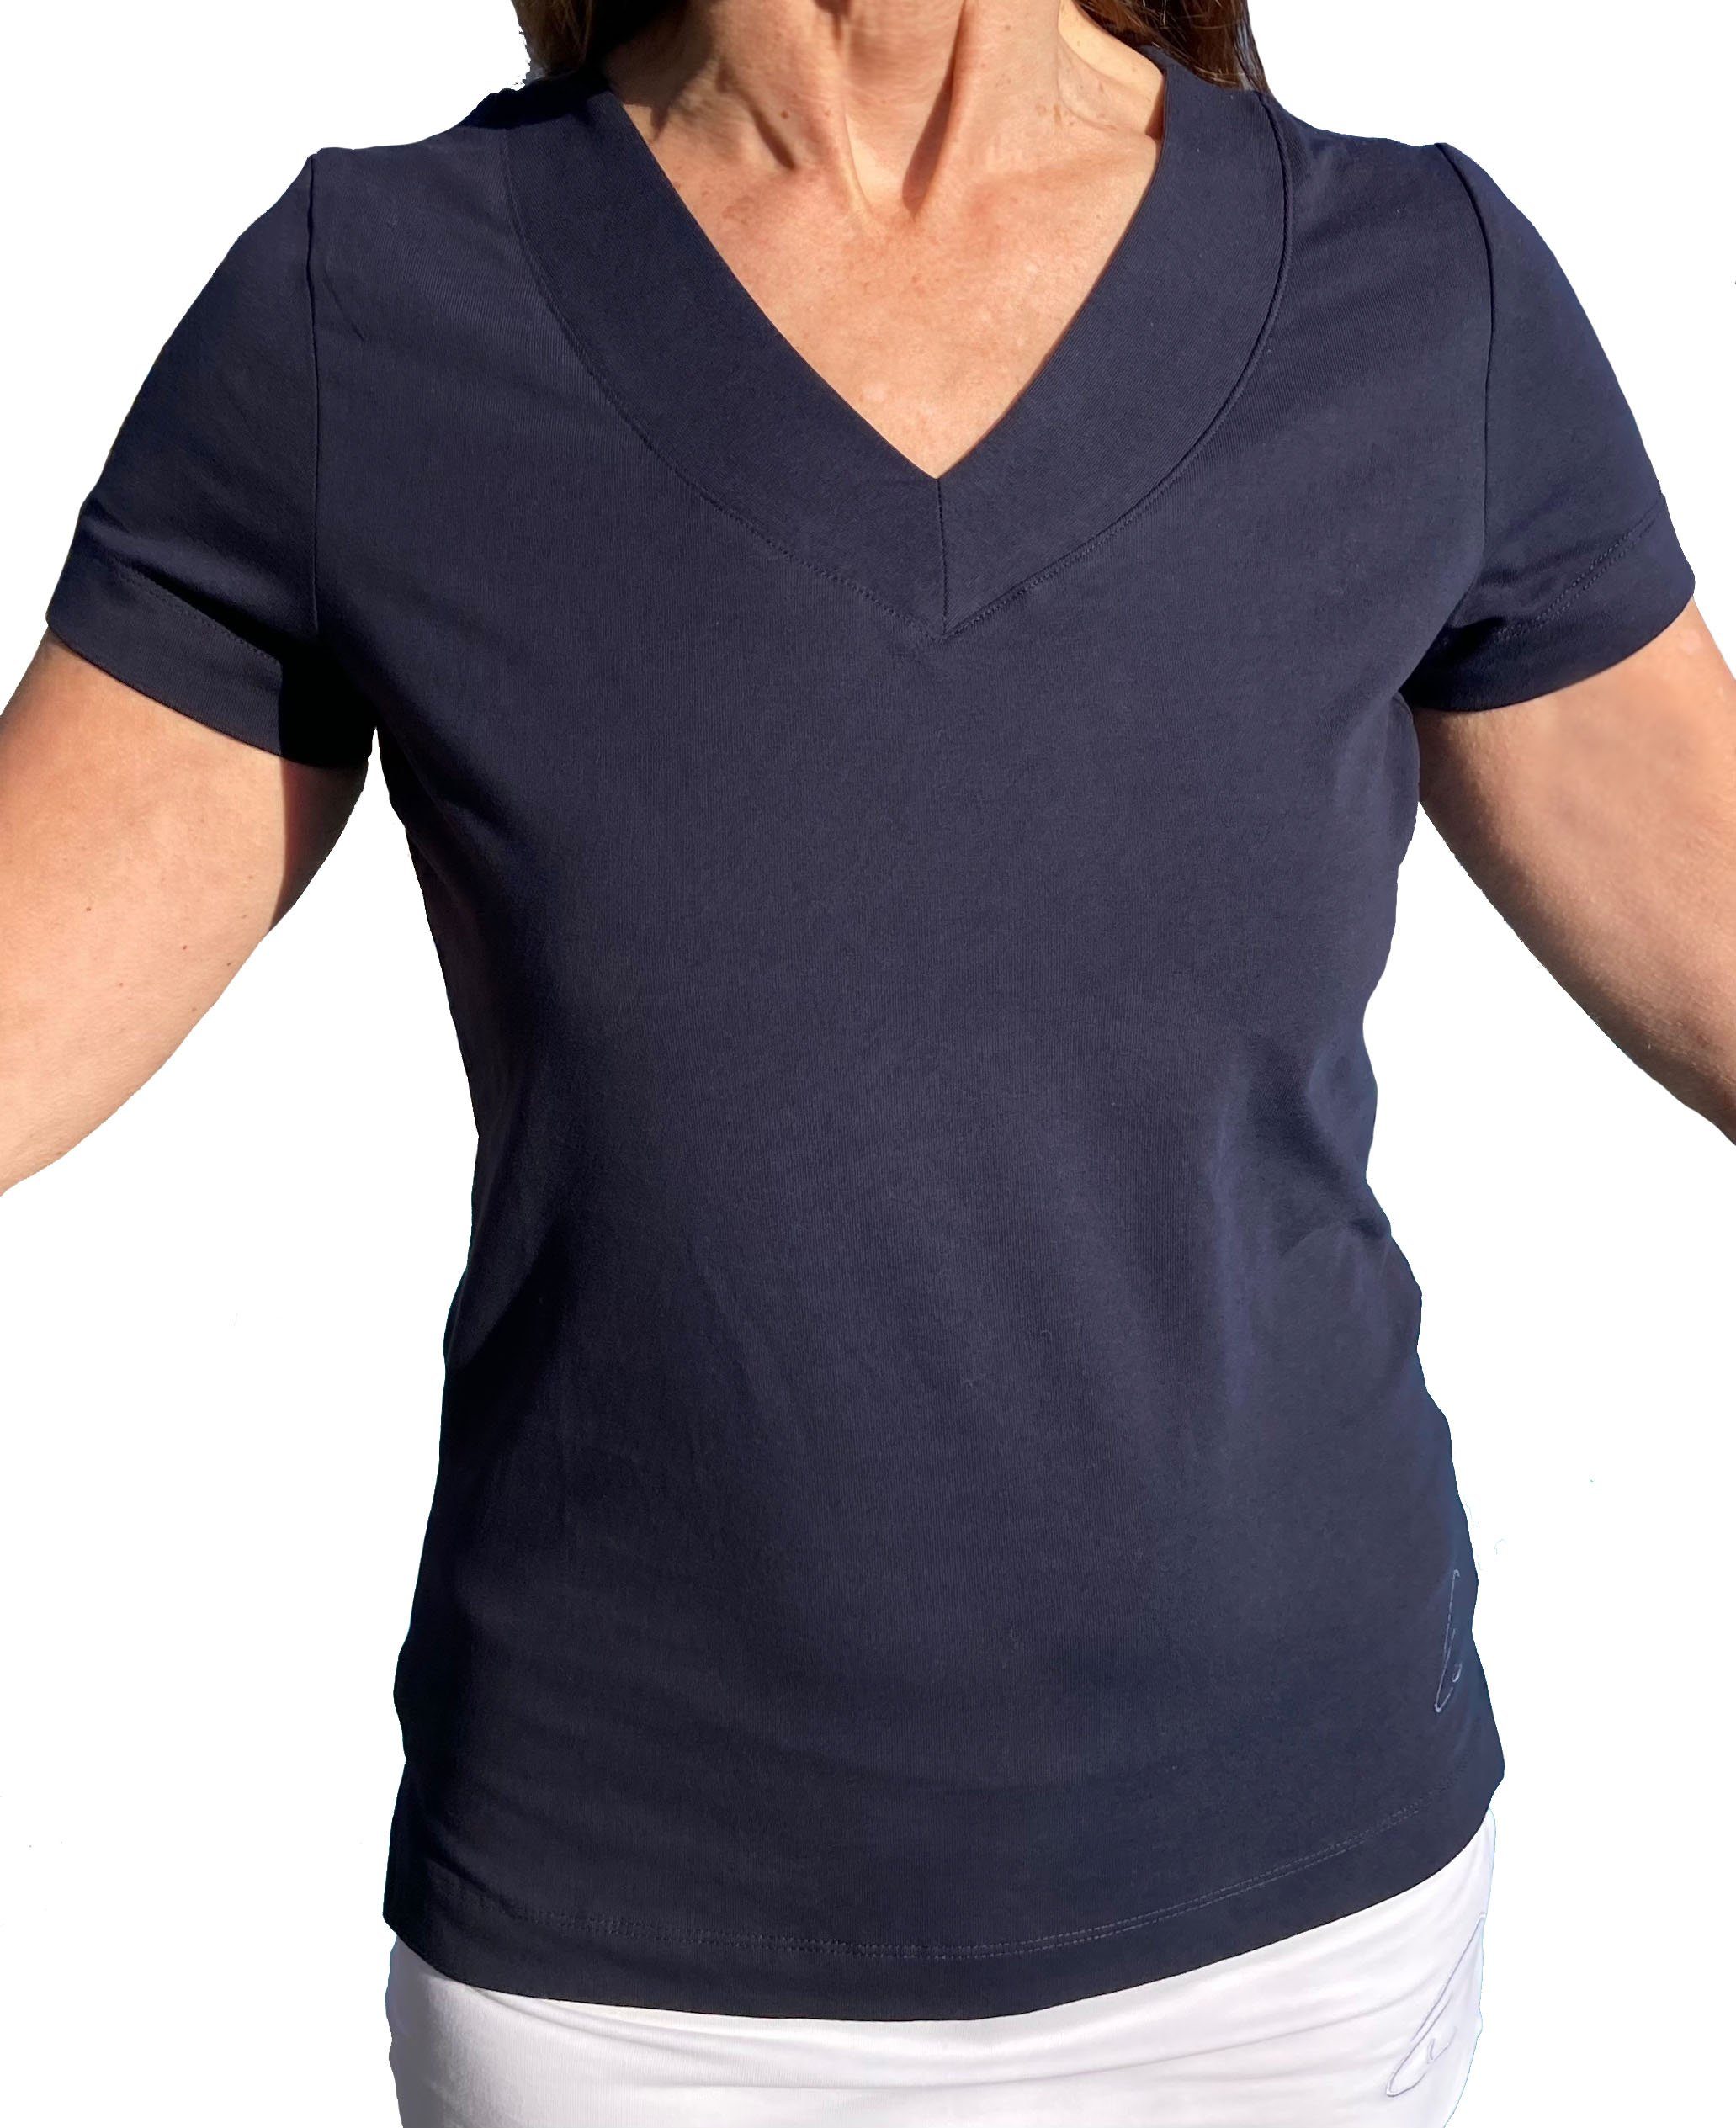 ESPARTO Yogashirt Yoga V-Shirt Farishta geschlitzt V-Shirt mit Nachtblau unten in Ärmeln, kurzen Bio-Baumwolle